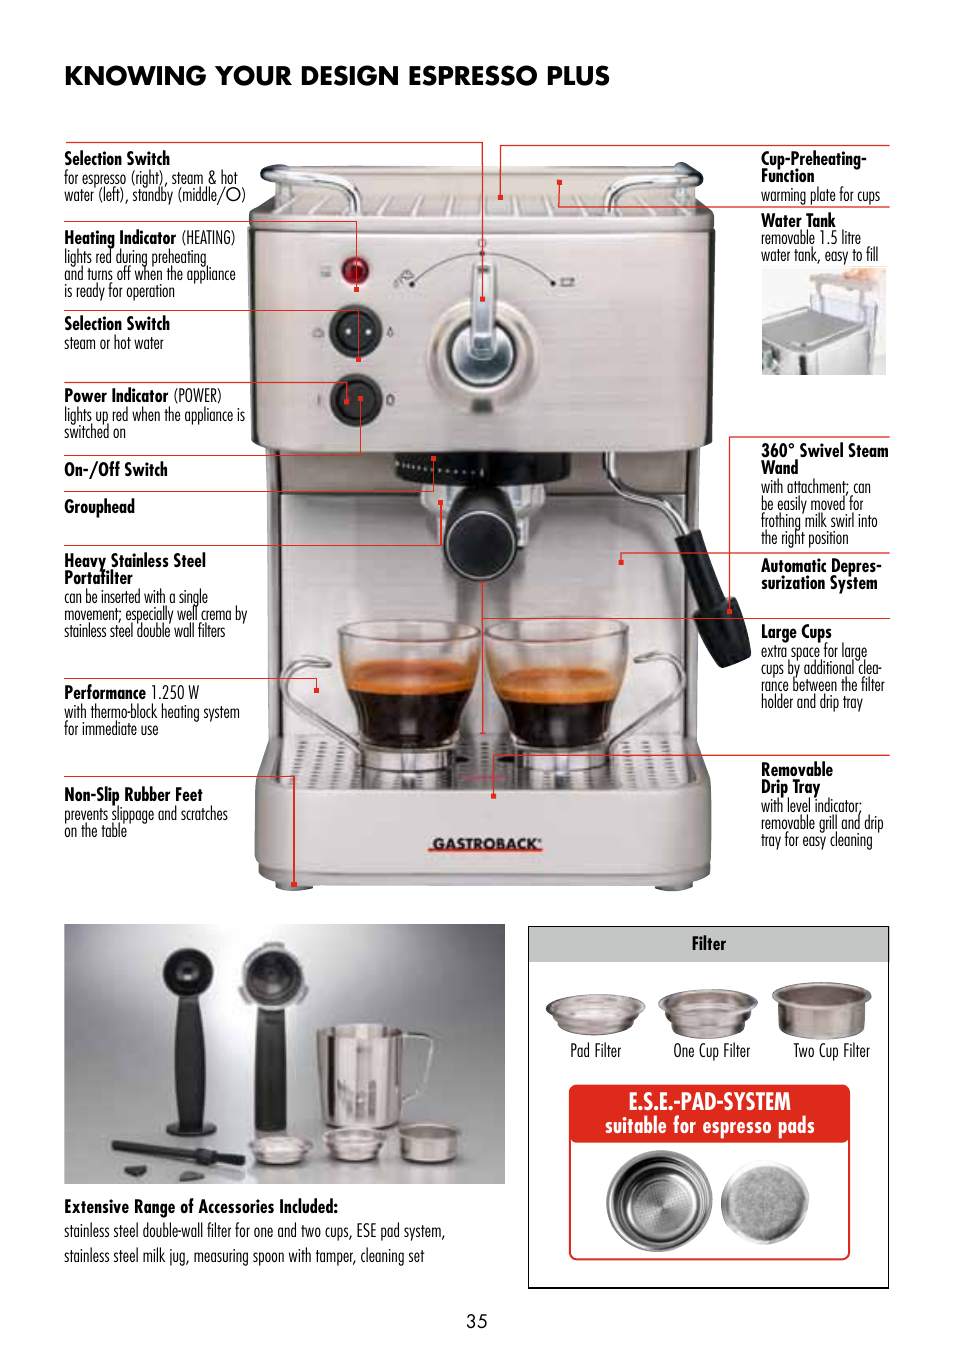 Knowing your design espresso plus, E.s.e.-pad-system | Gastroback 42606  Design Espresso Plus User Manual | Page 5 / 30